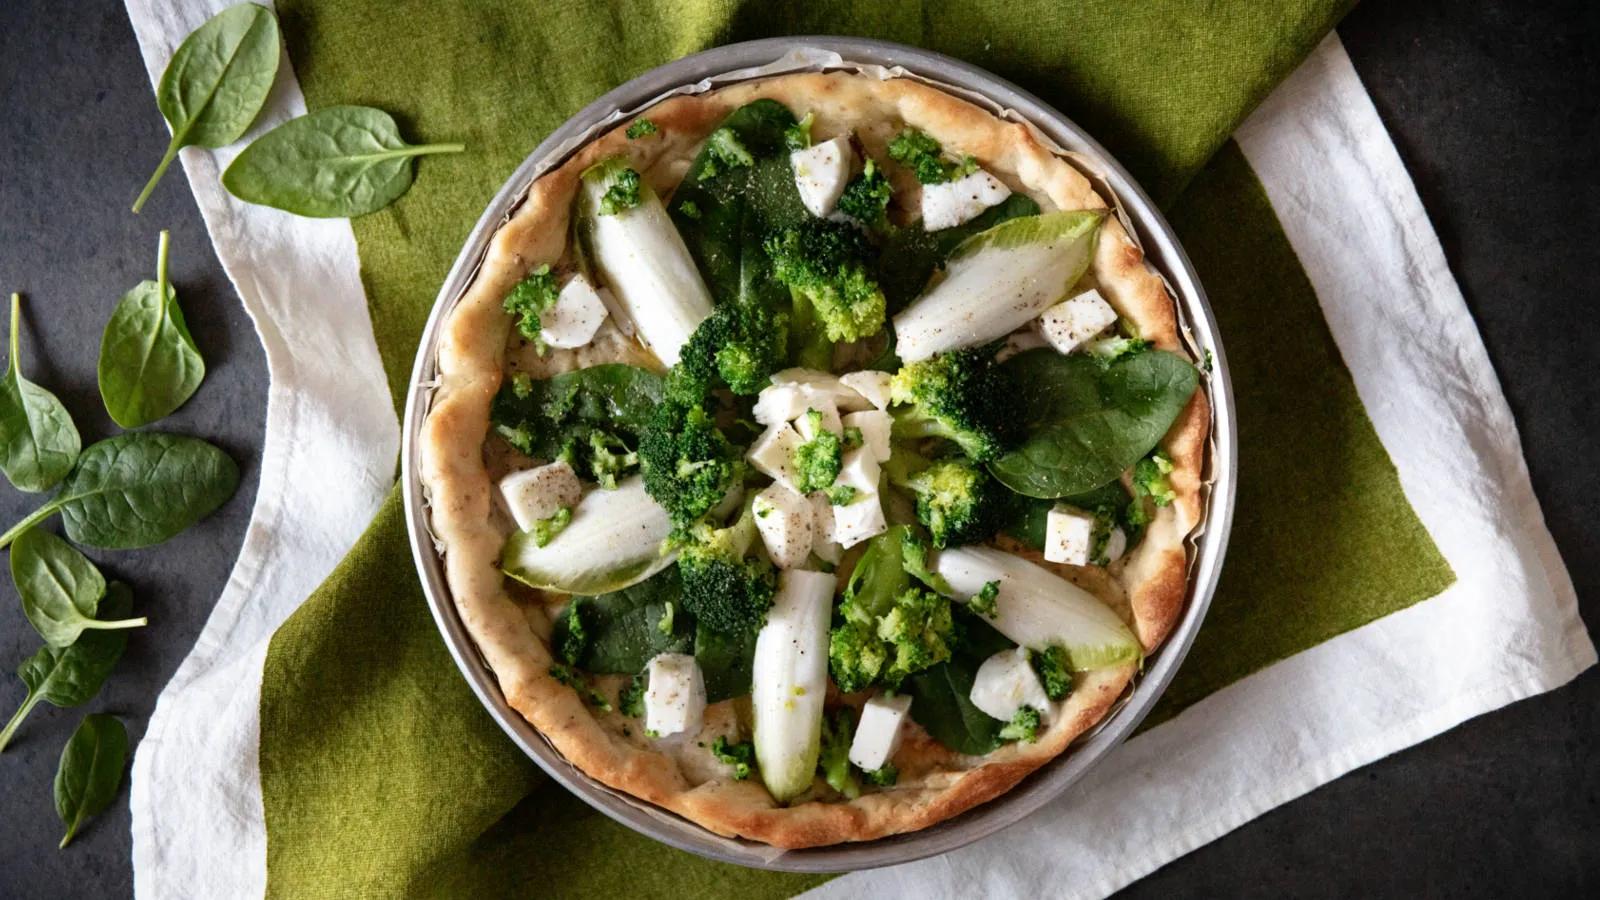 Pizza integrale con mozzarella cruda, broccoli, indivia e spinaci ...